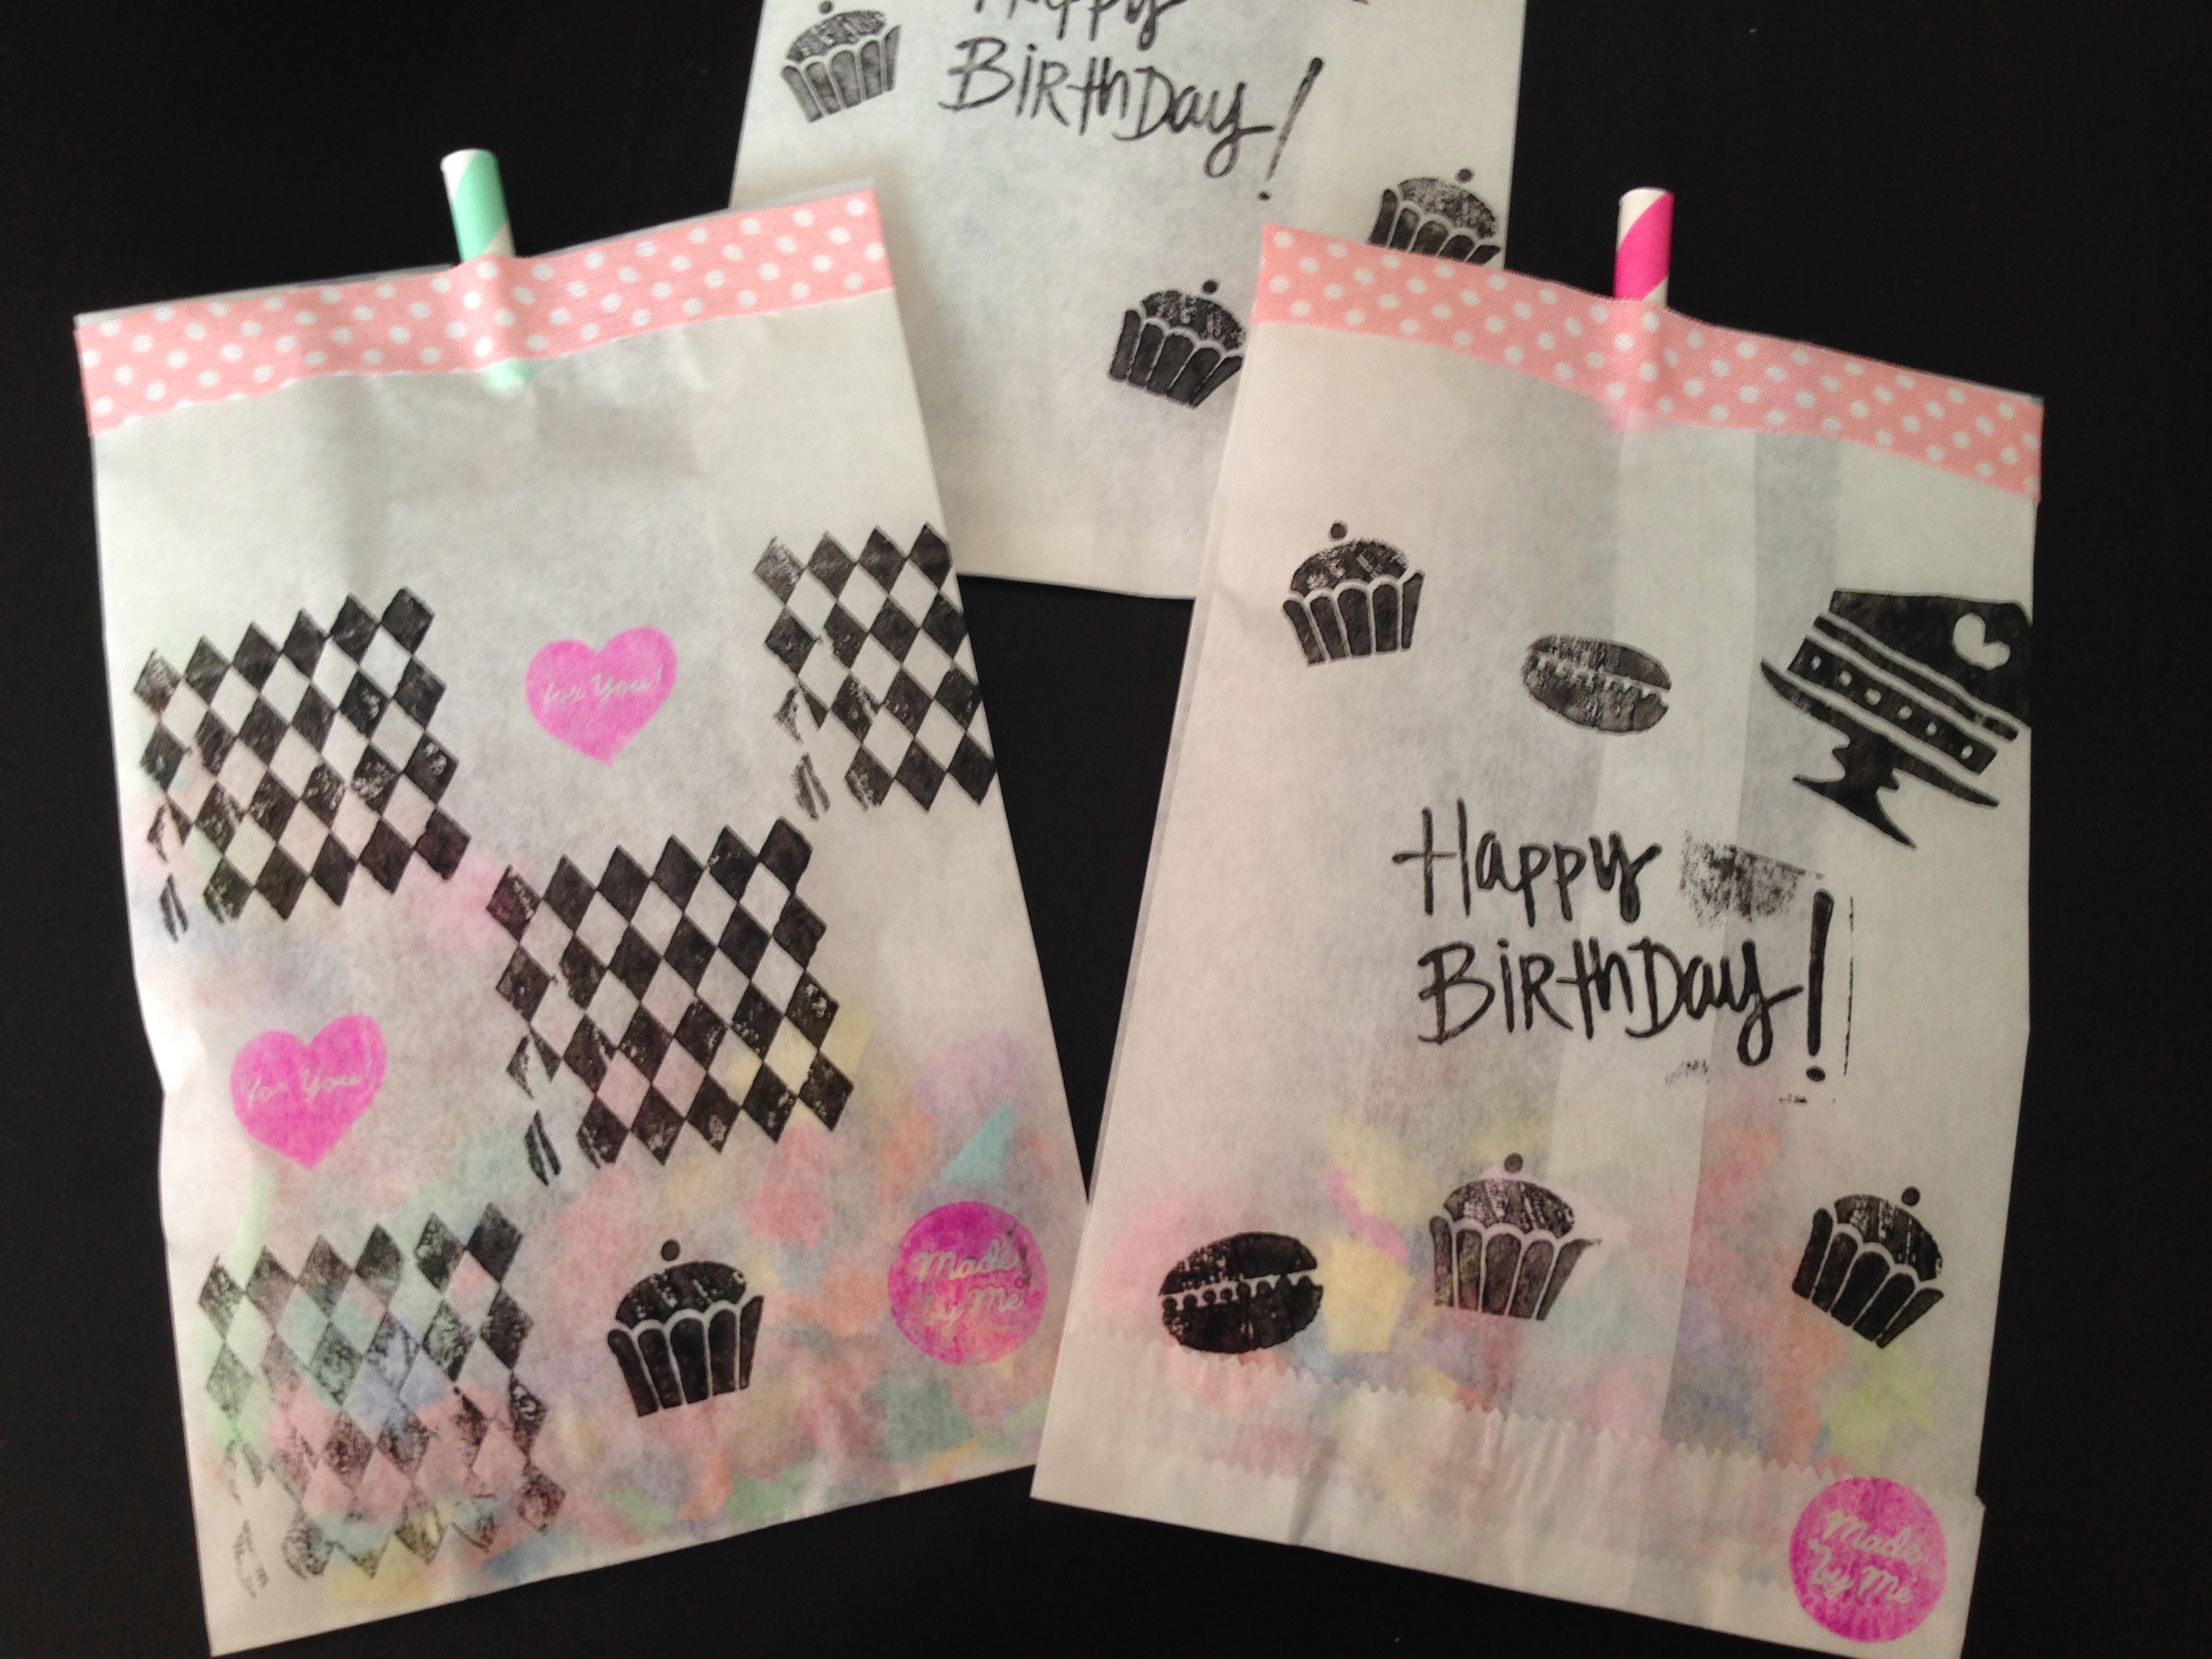 DIY Wundertüte mit Konfetti: Coole Geburtstagskarte selber machen